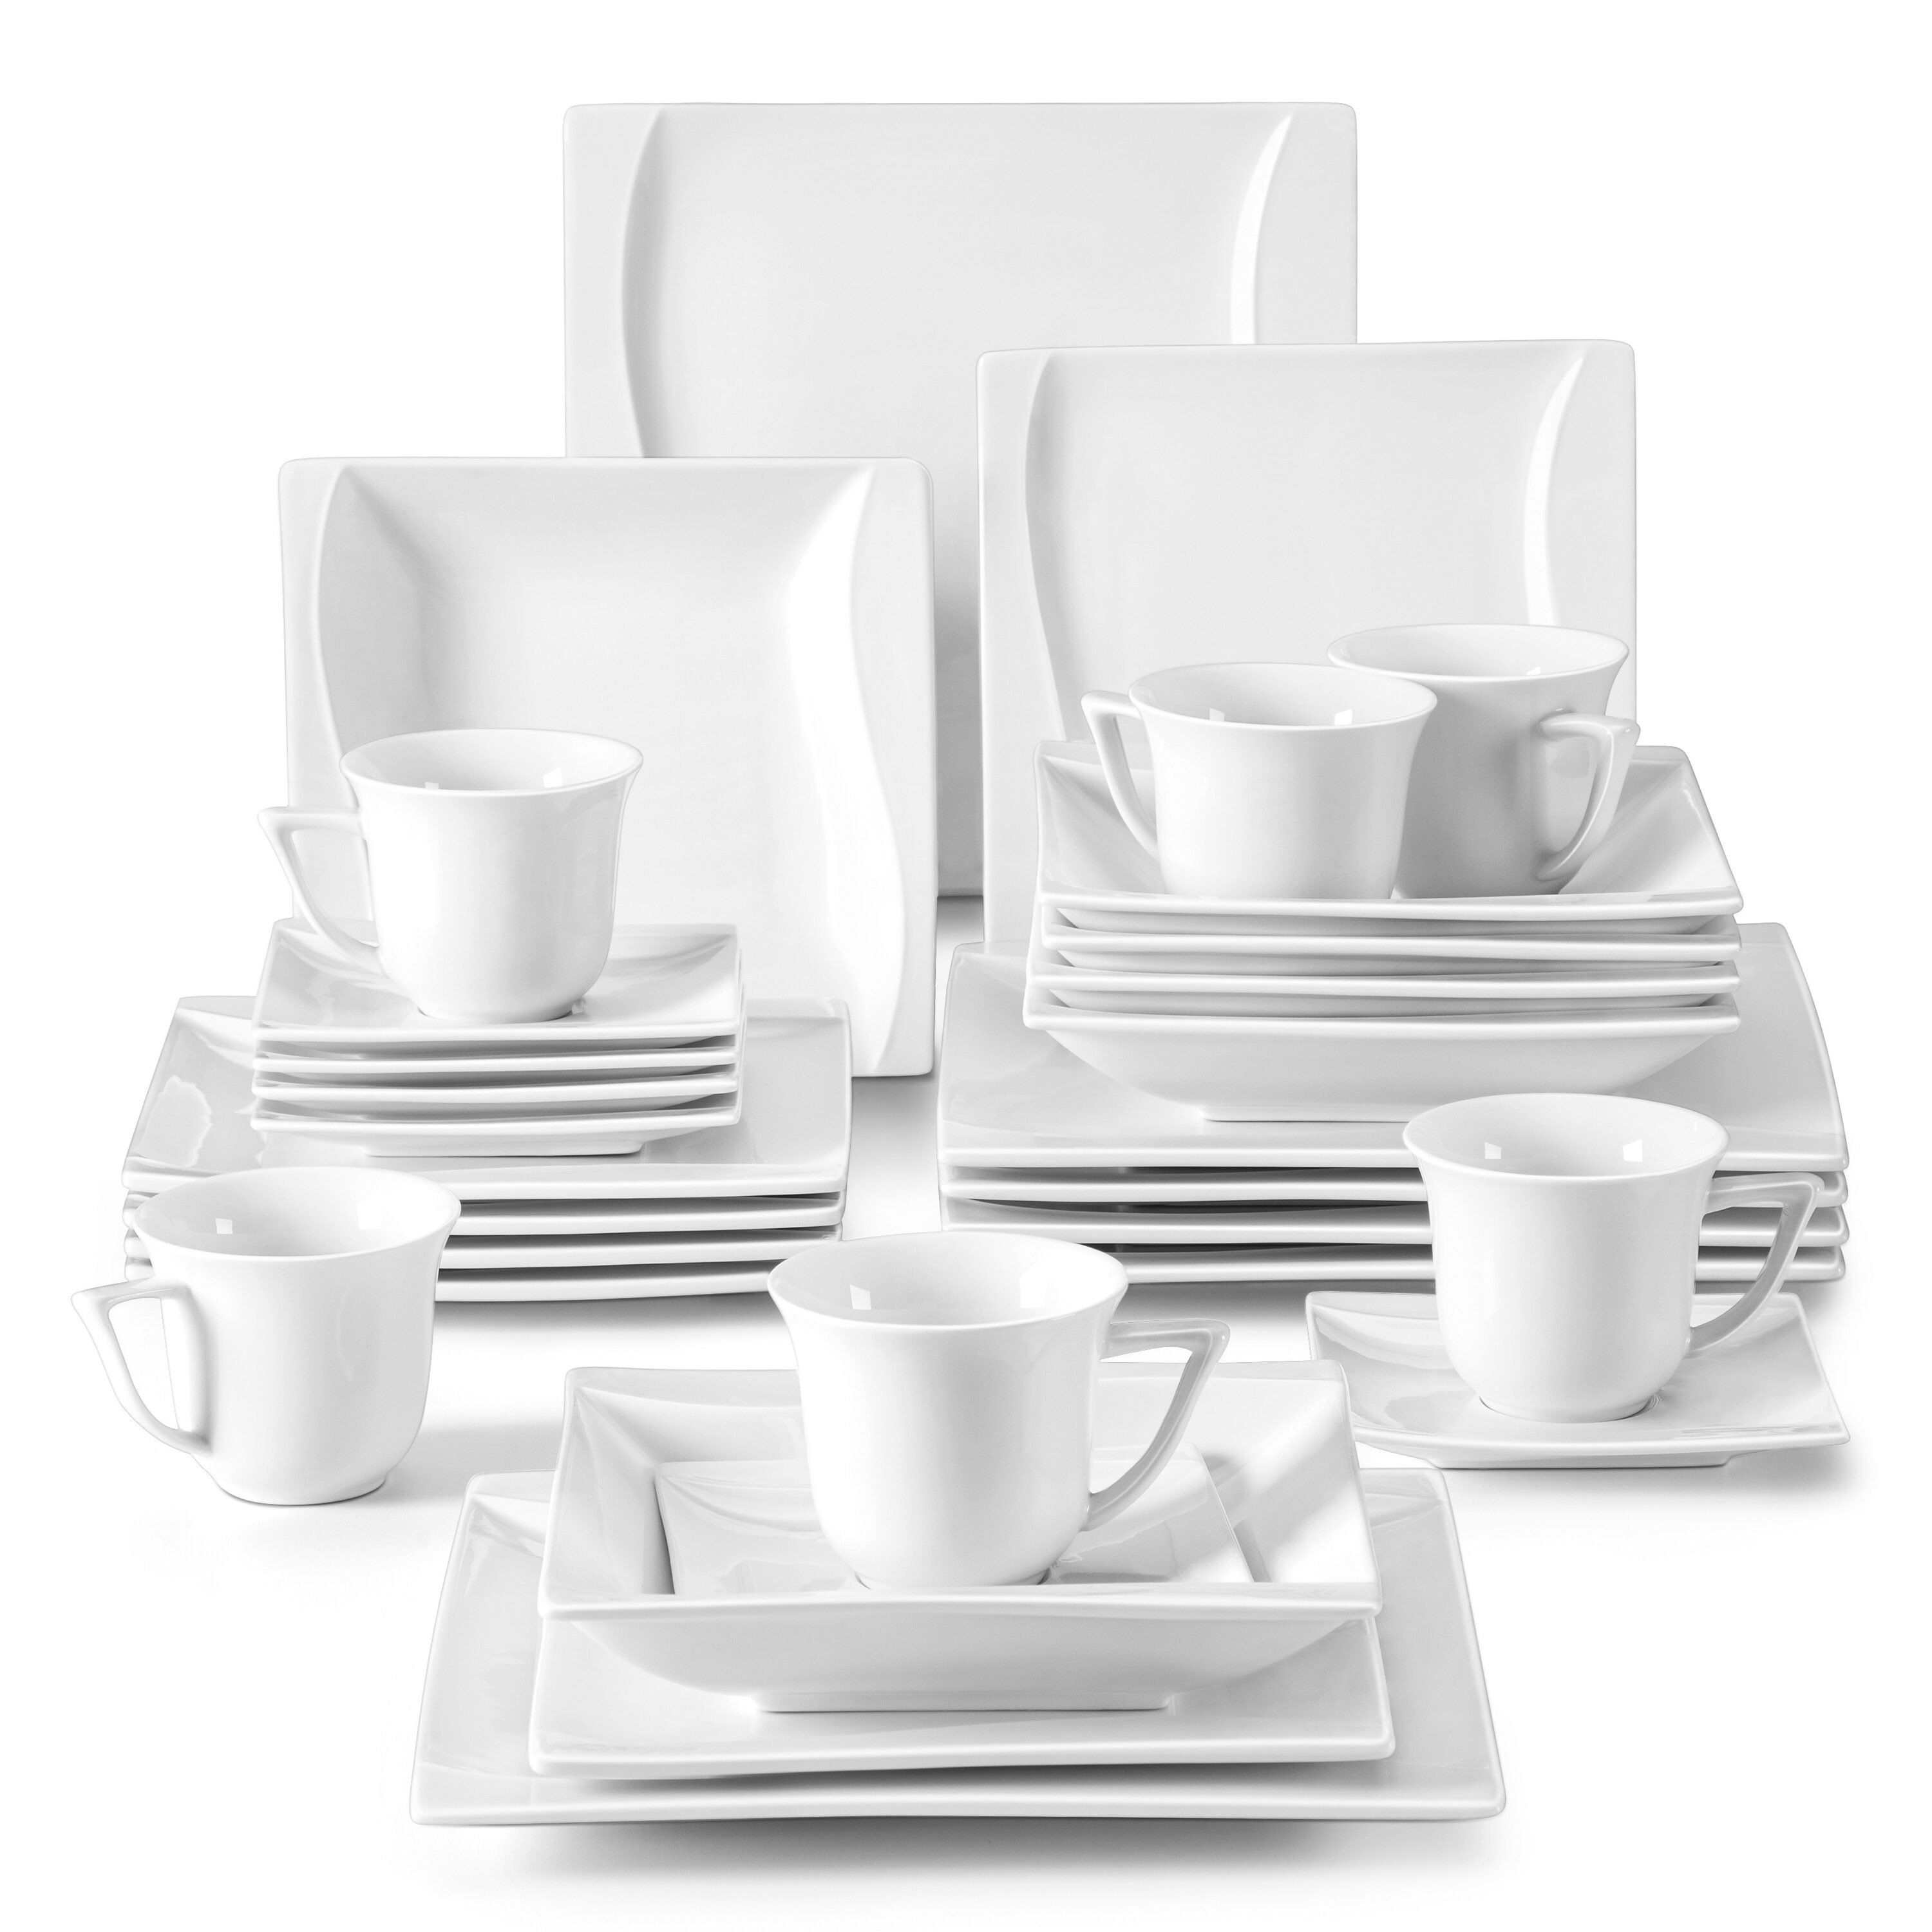 MALACASA Dinnerware Set 26-Pcs Contemporary White Porcelain